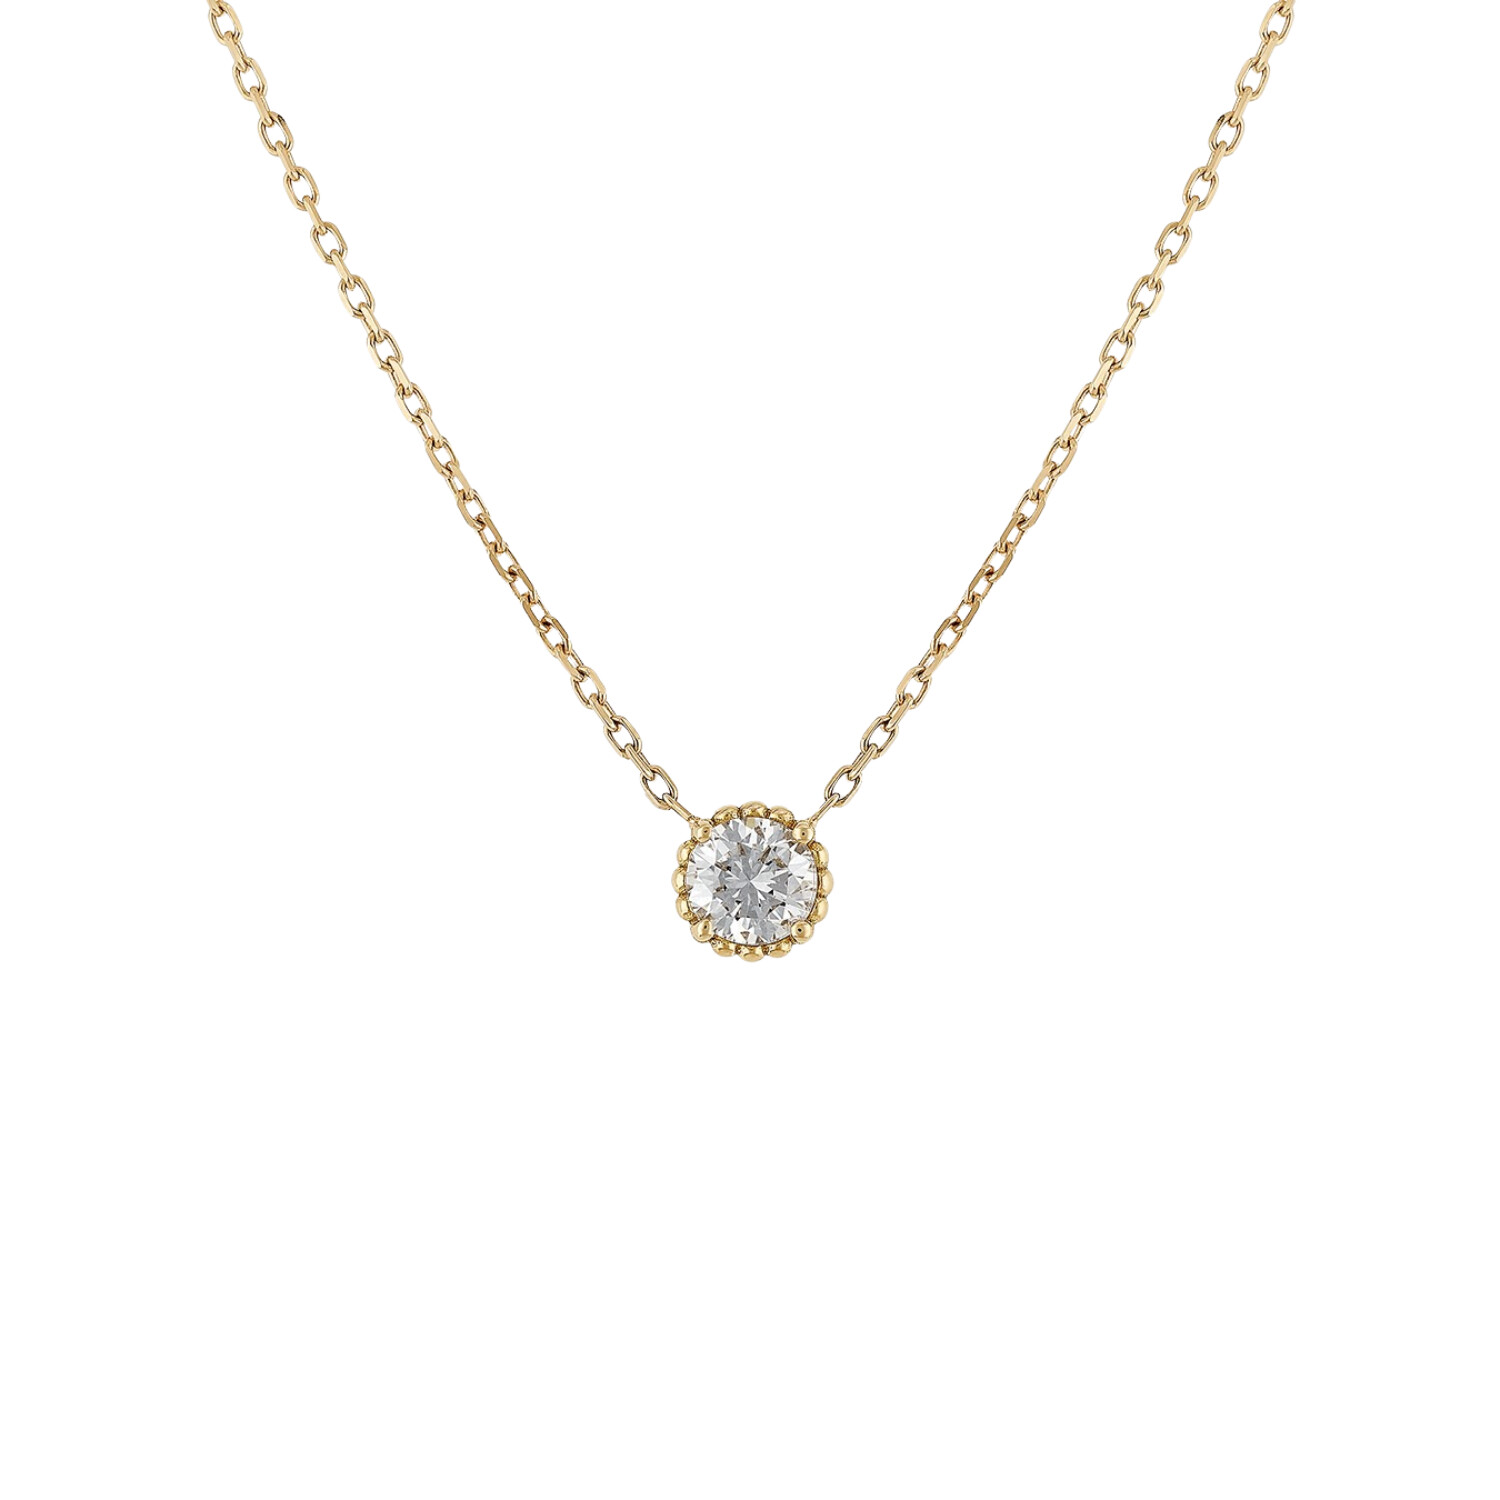 Purchase Barth Monte-Carlo Oursin pendant, rose gold and diamonds